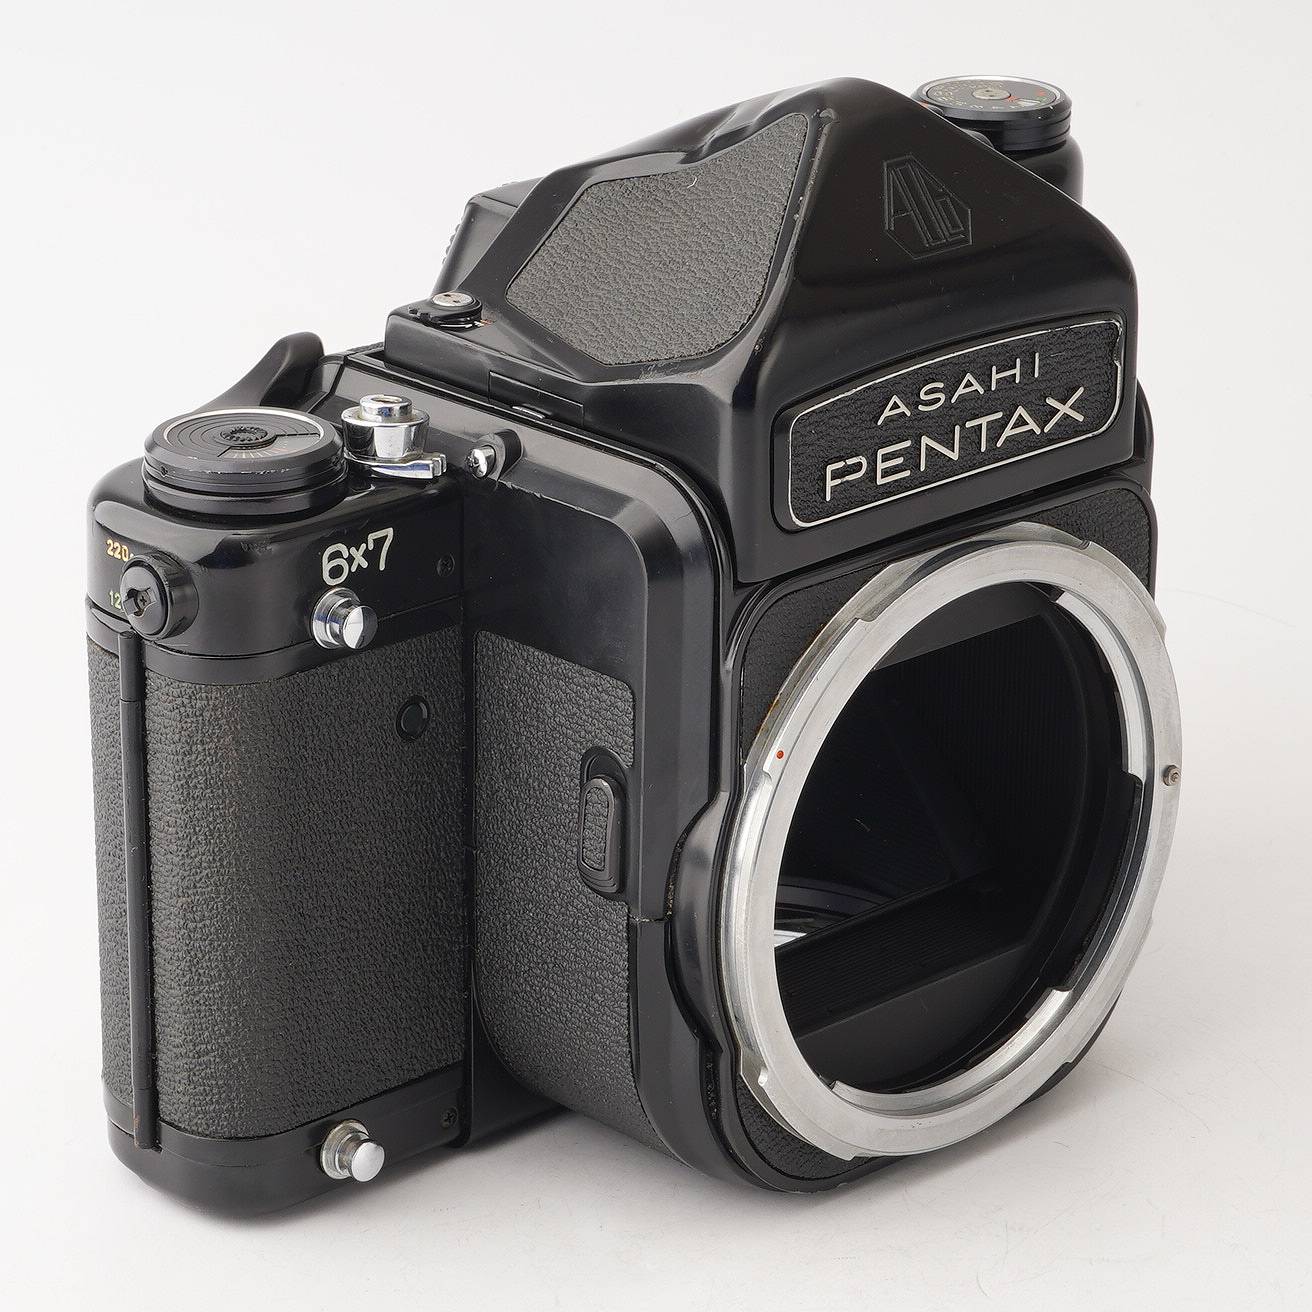 お値段変更しました^_^PENTAX 67 ＋ 6X7 TTLファインダー ペンタックス 中判カメラ